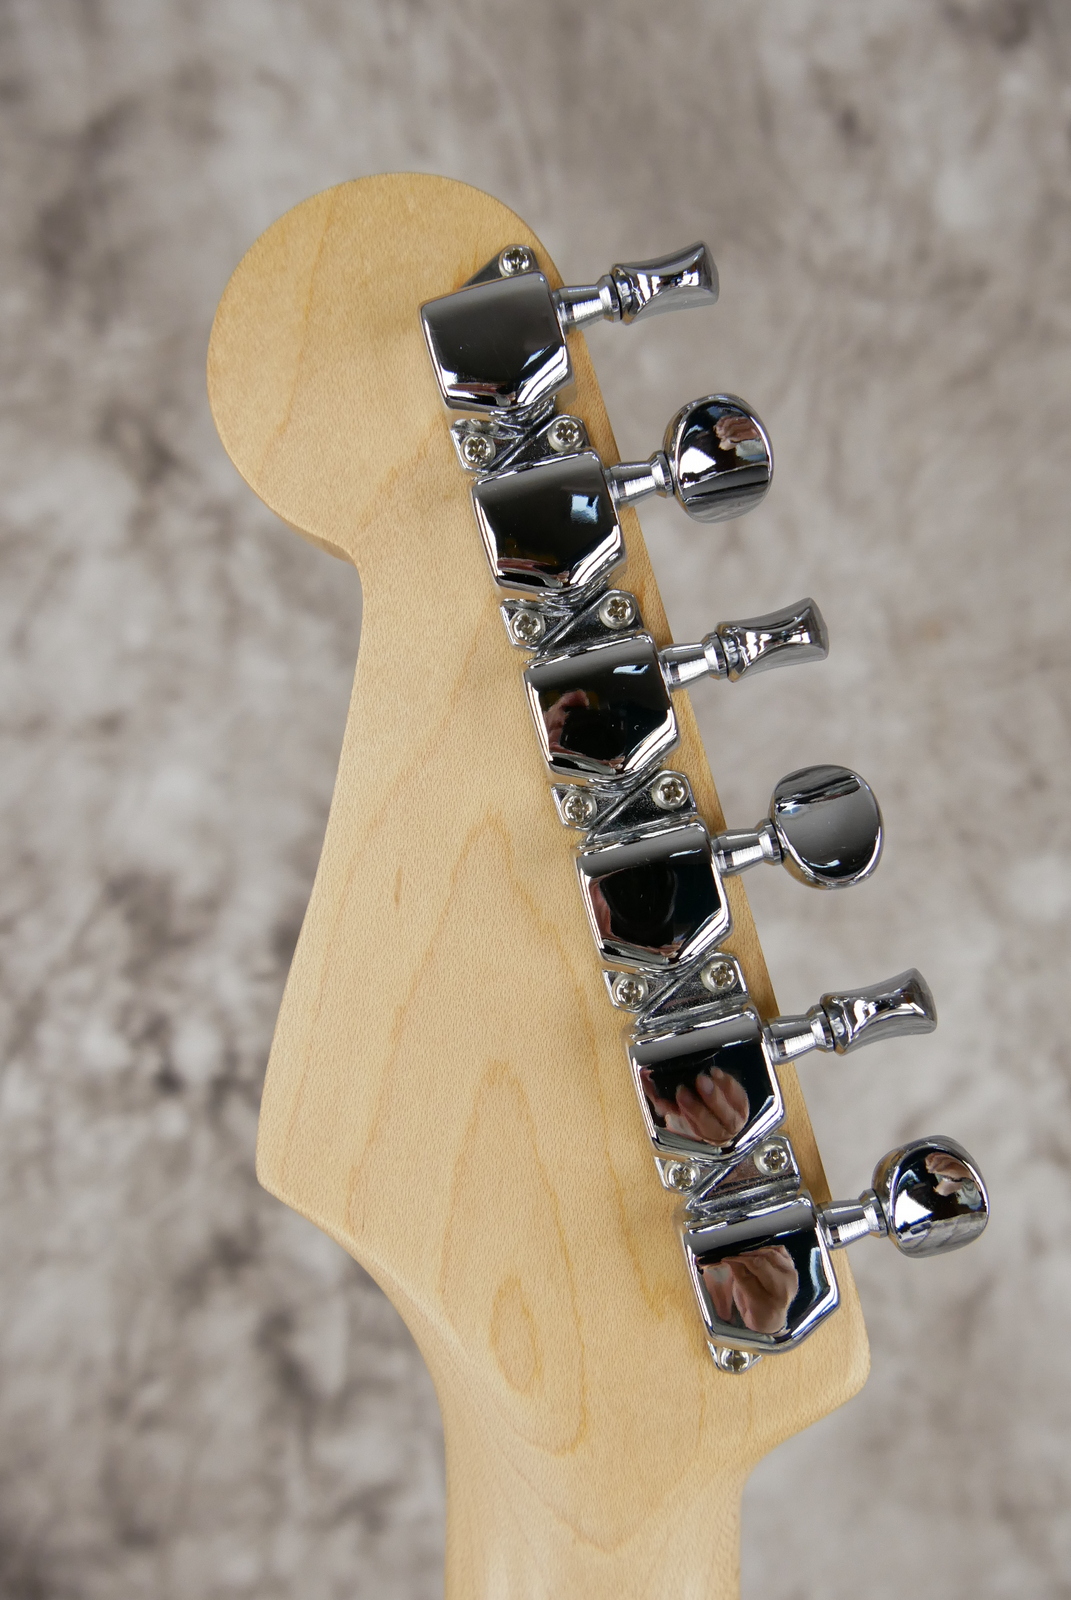 Fender_Stratocaster_Squier_series_Japan_olympic_white_1993-010.JPG